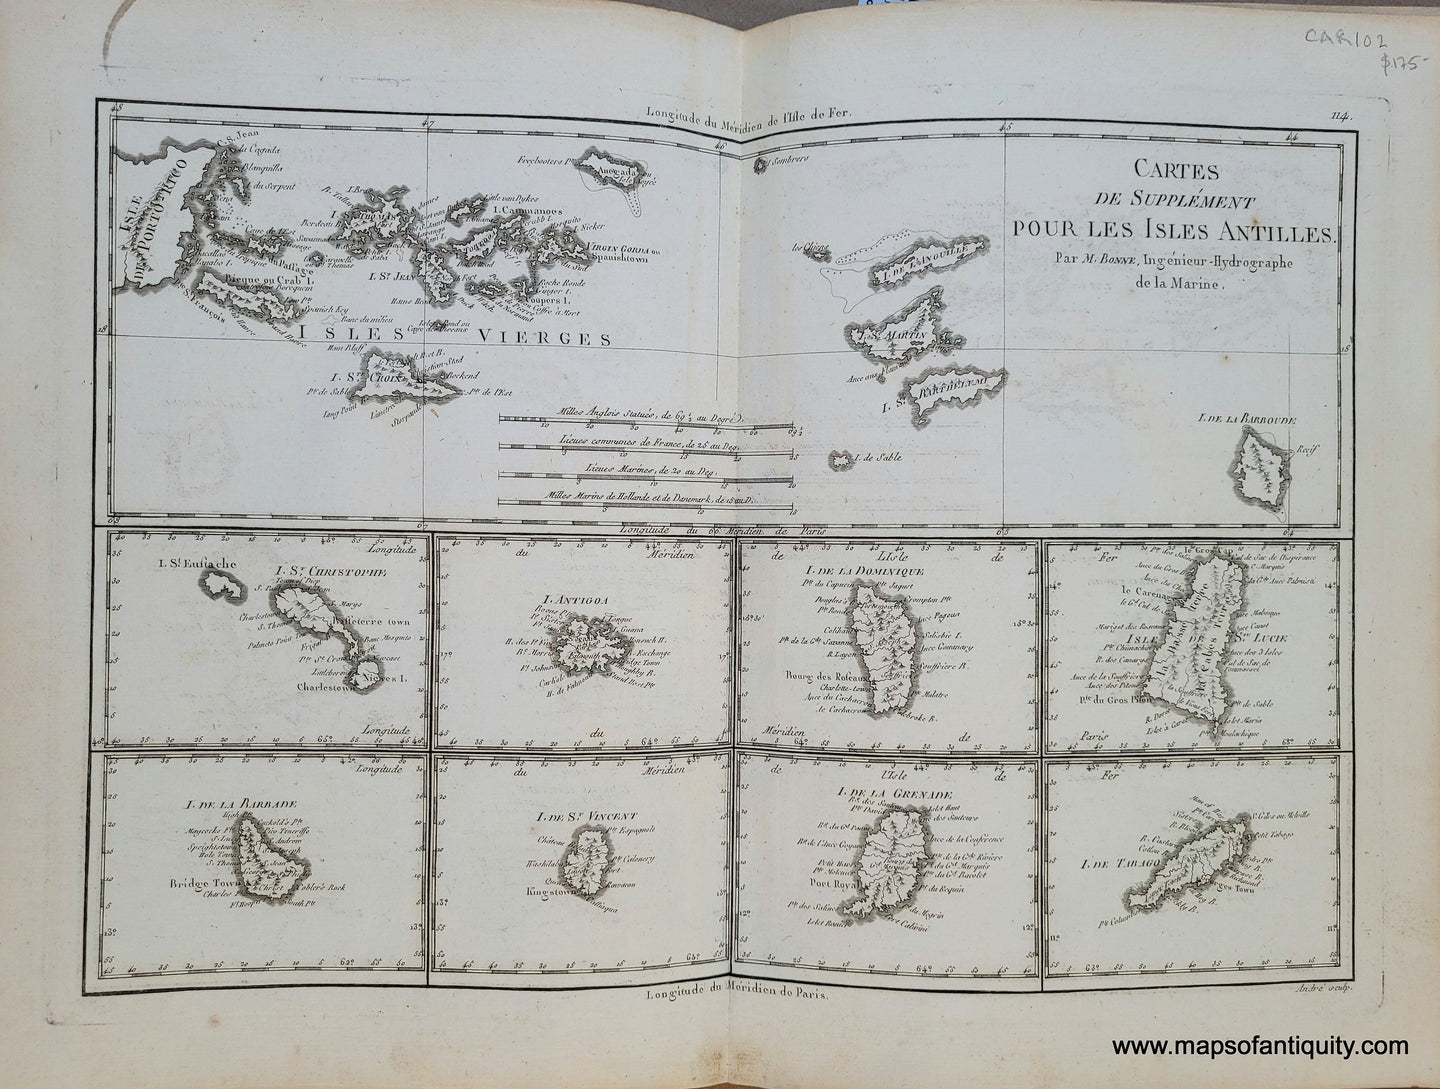 Genuine-Antique-Map-Virgin-Islands-and-other-Caribbean-Islands---Cartes-de-Supplement-pour-les-Isles-Antilles-1788-Bonne-Desmarest-Maps-Of-Antiquity